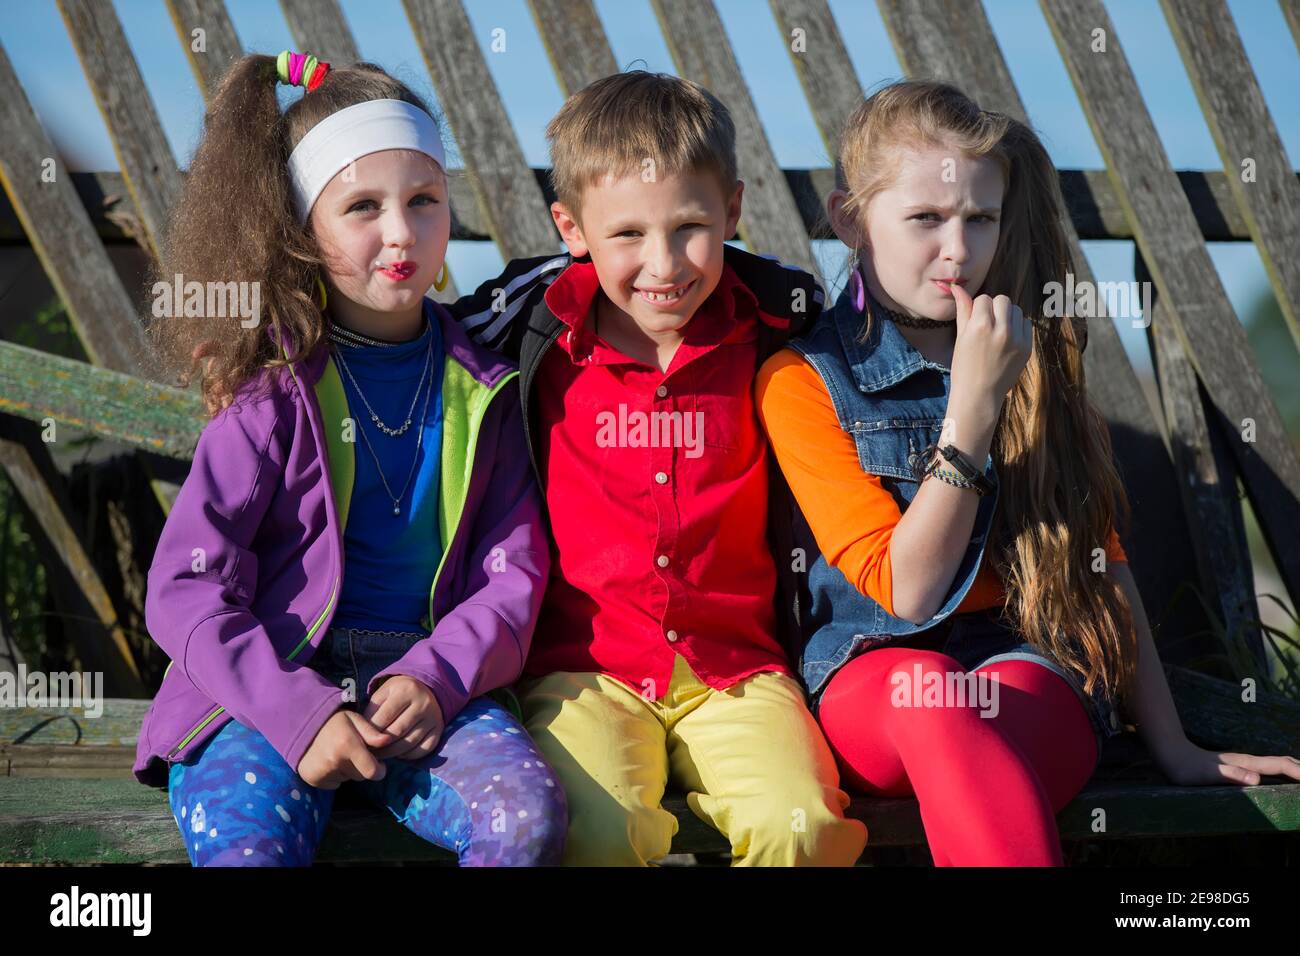 Niños pequeños divertidos: Las chicas con maquillaje brillante vestidas al estilo de los años noventa y un niño con camisa roja están sentados en un banco cerca de una valla sesgada Foto de stock